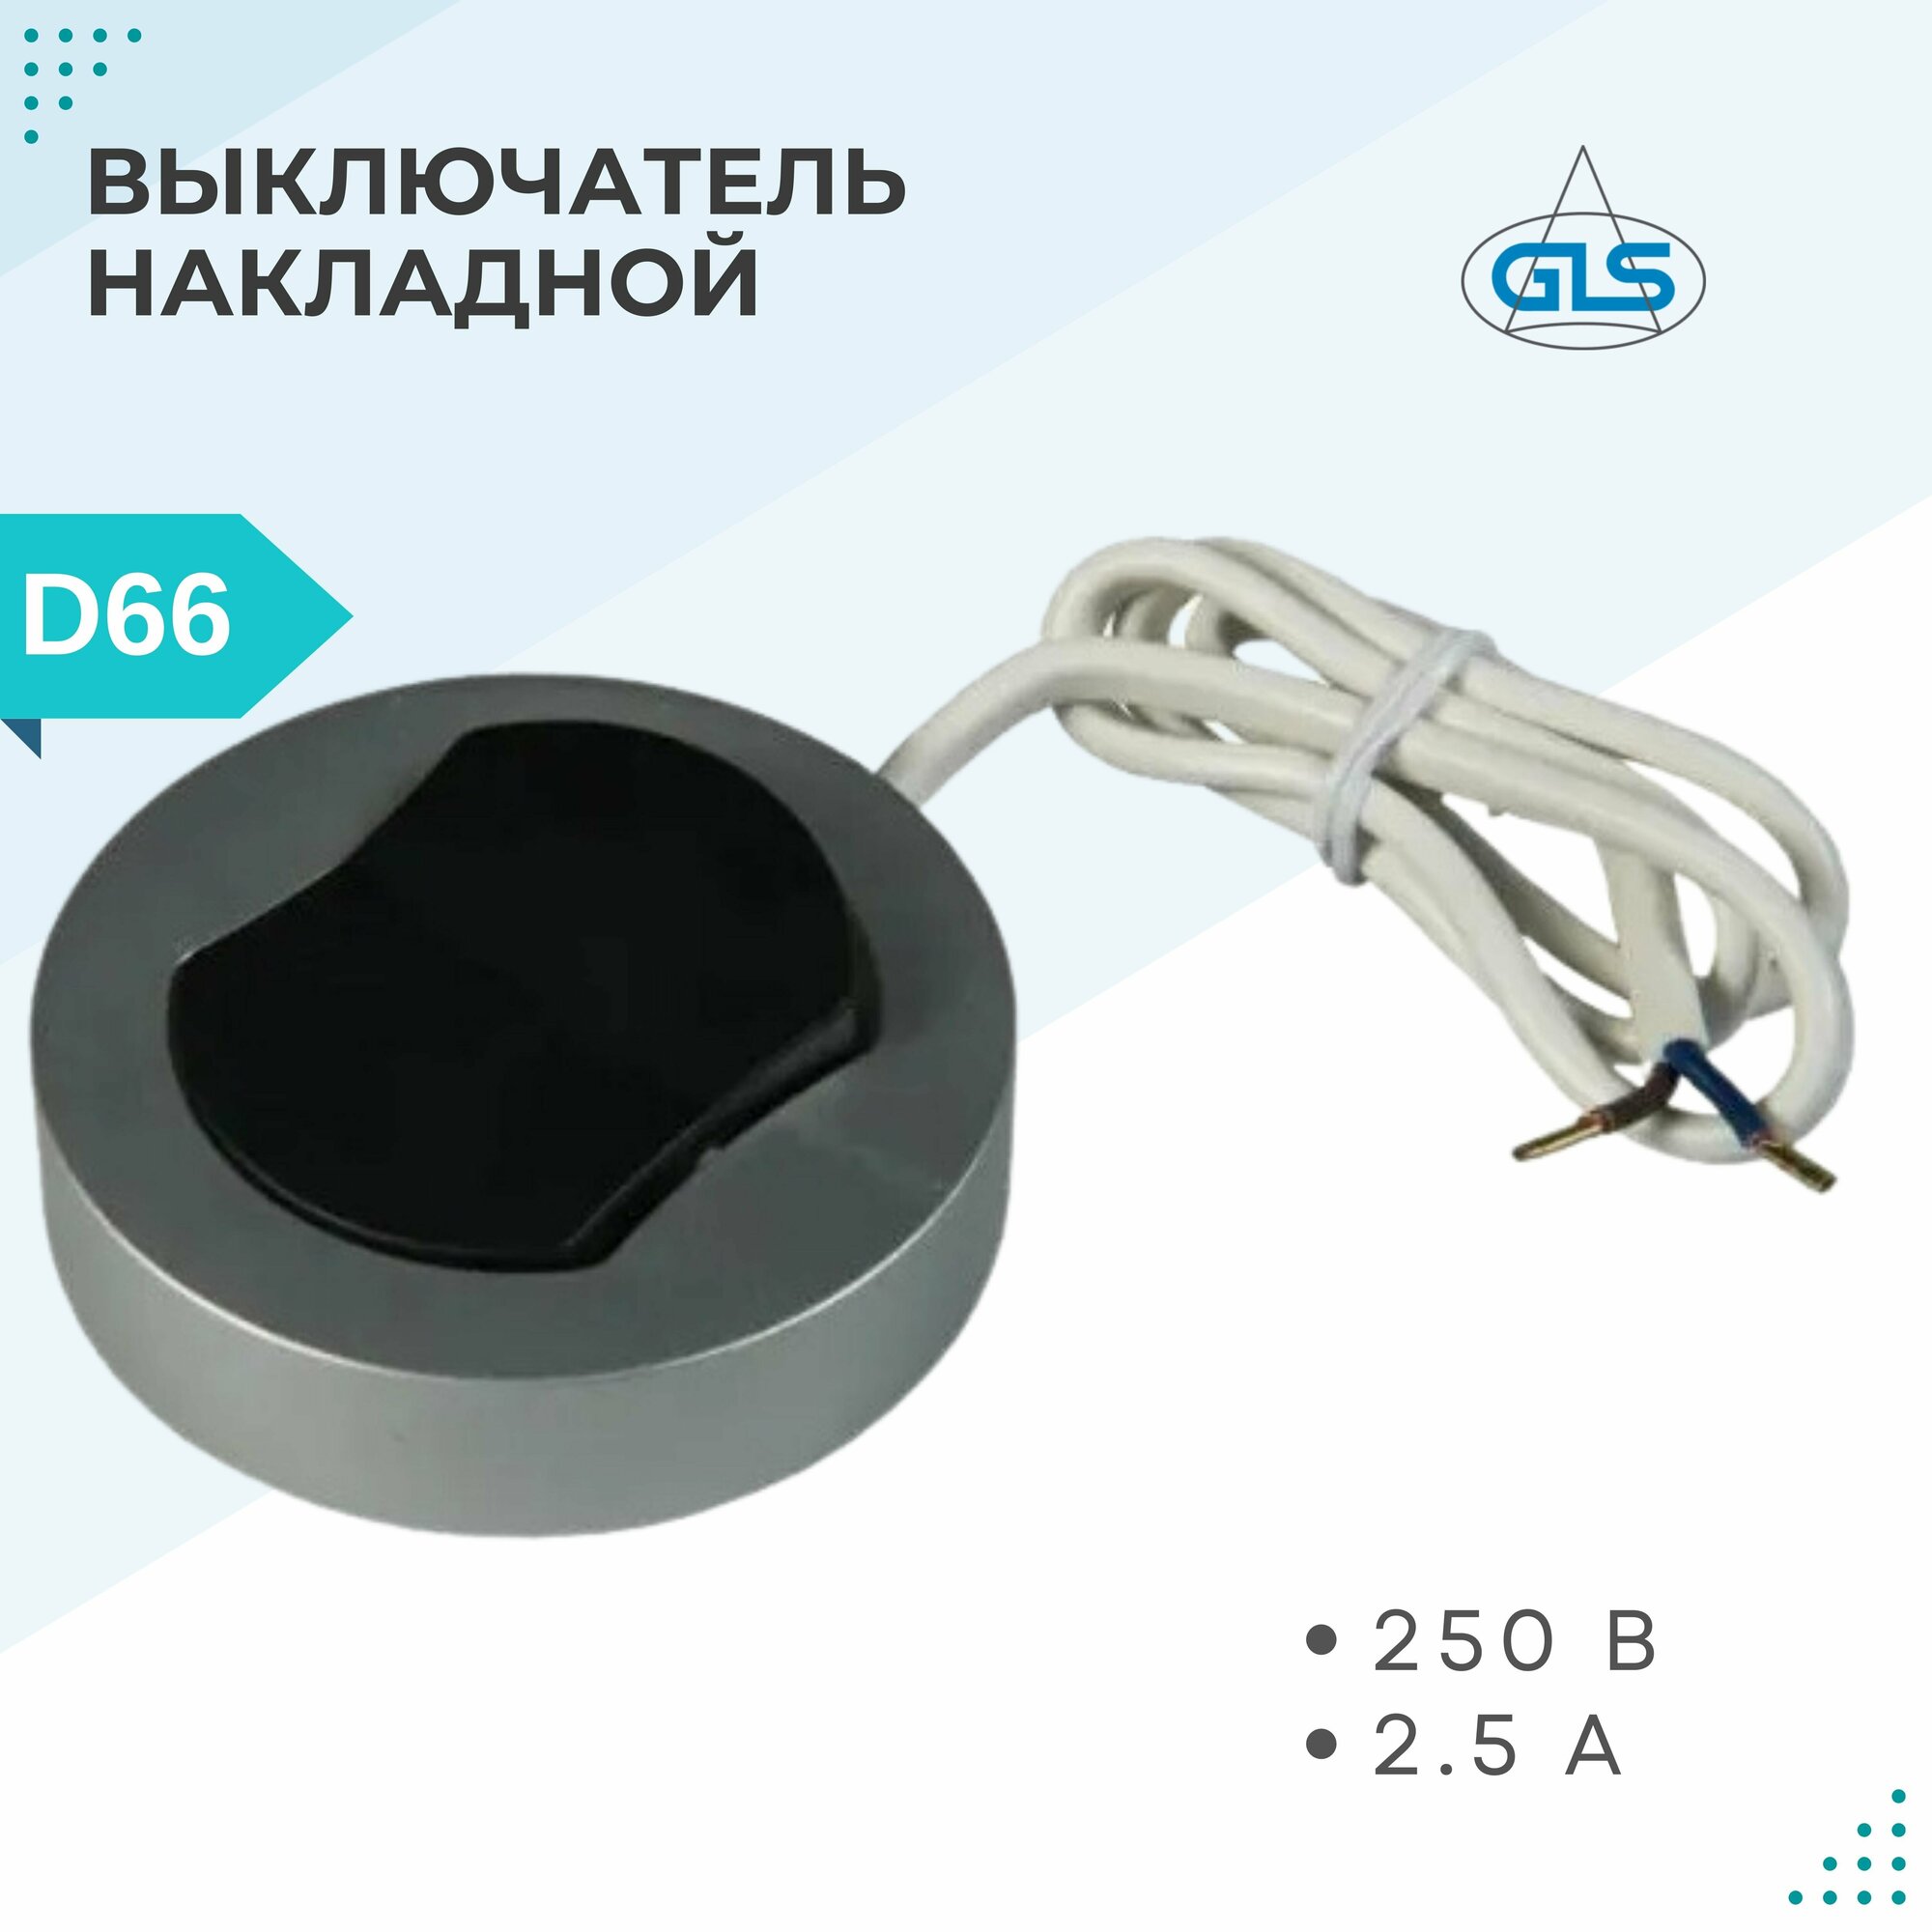 Выключатель накладной мебельный круглый, D66 мм, 250В, GLS, с проводом 0.2м, серебристо-серый